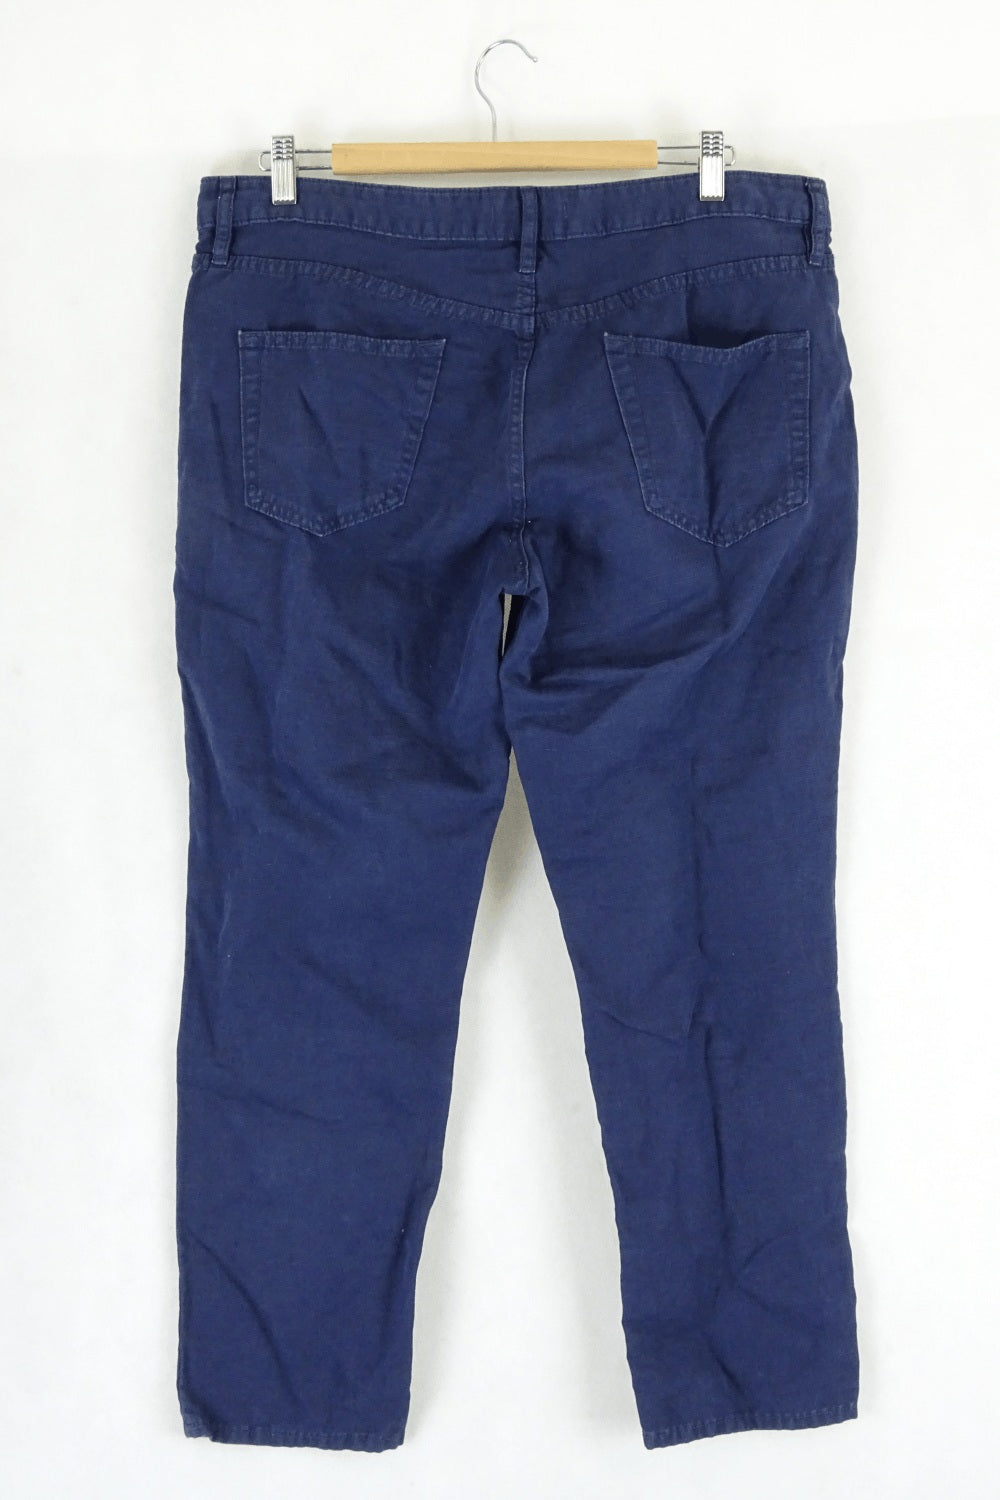 Uniqlo Blue Jeans 30 (AU12)